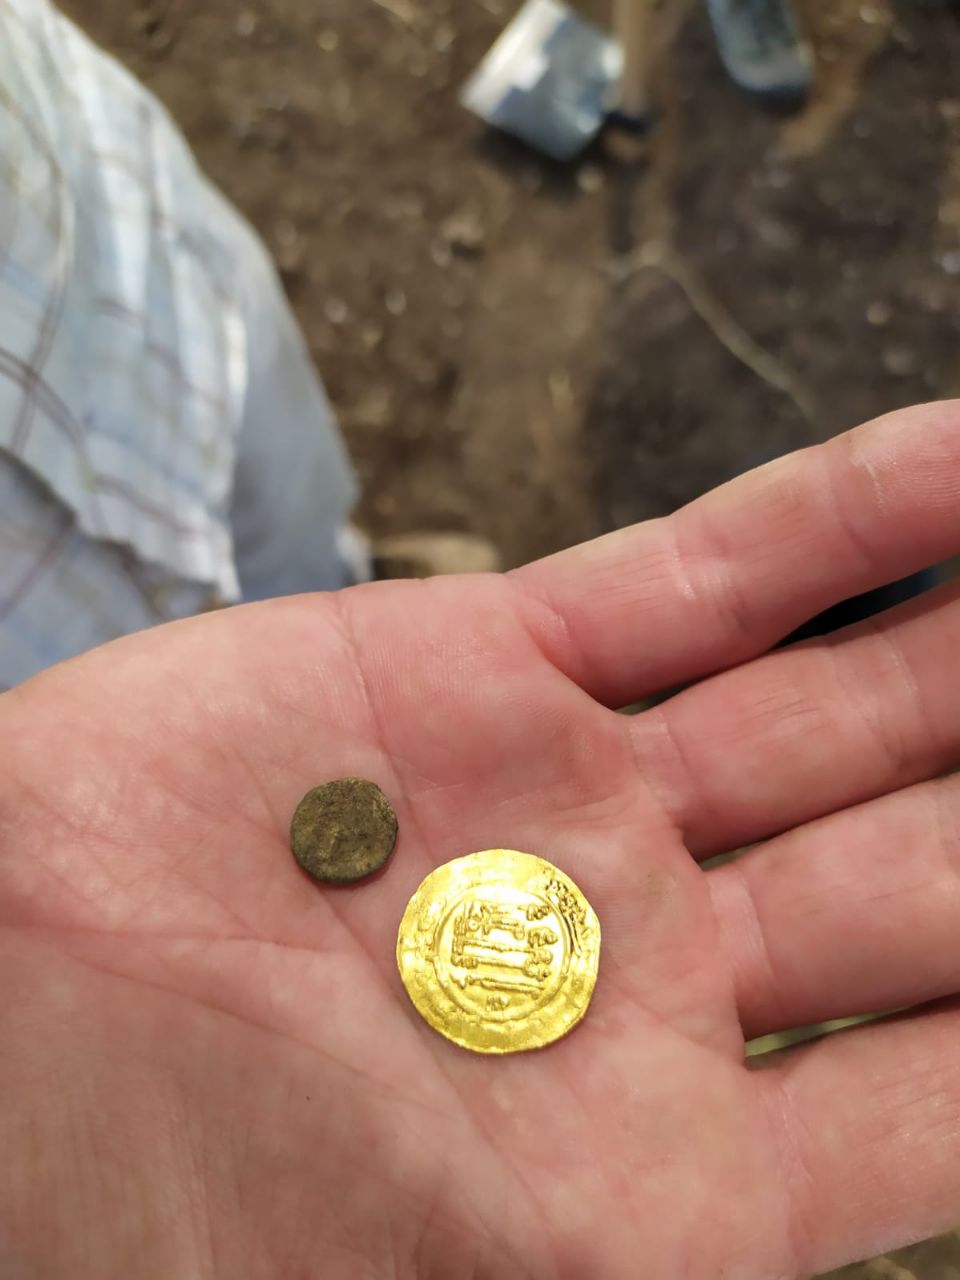 המטבע שהתגלה (צילום: ניקול גוטמן, תוכנית קרב)